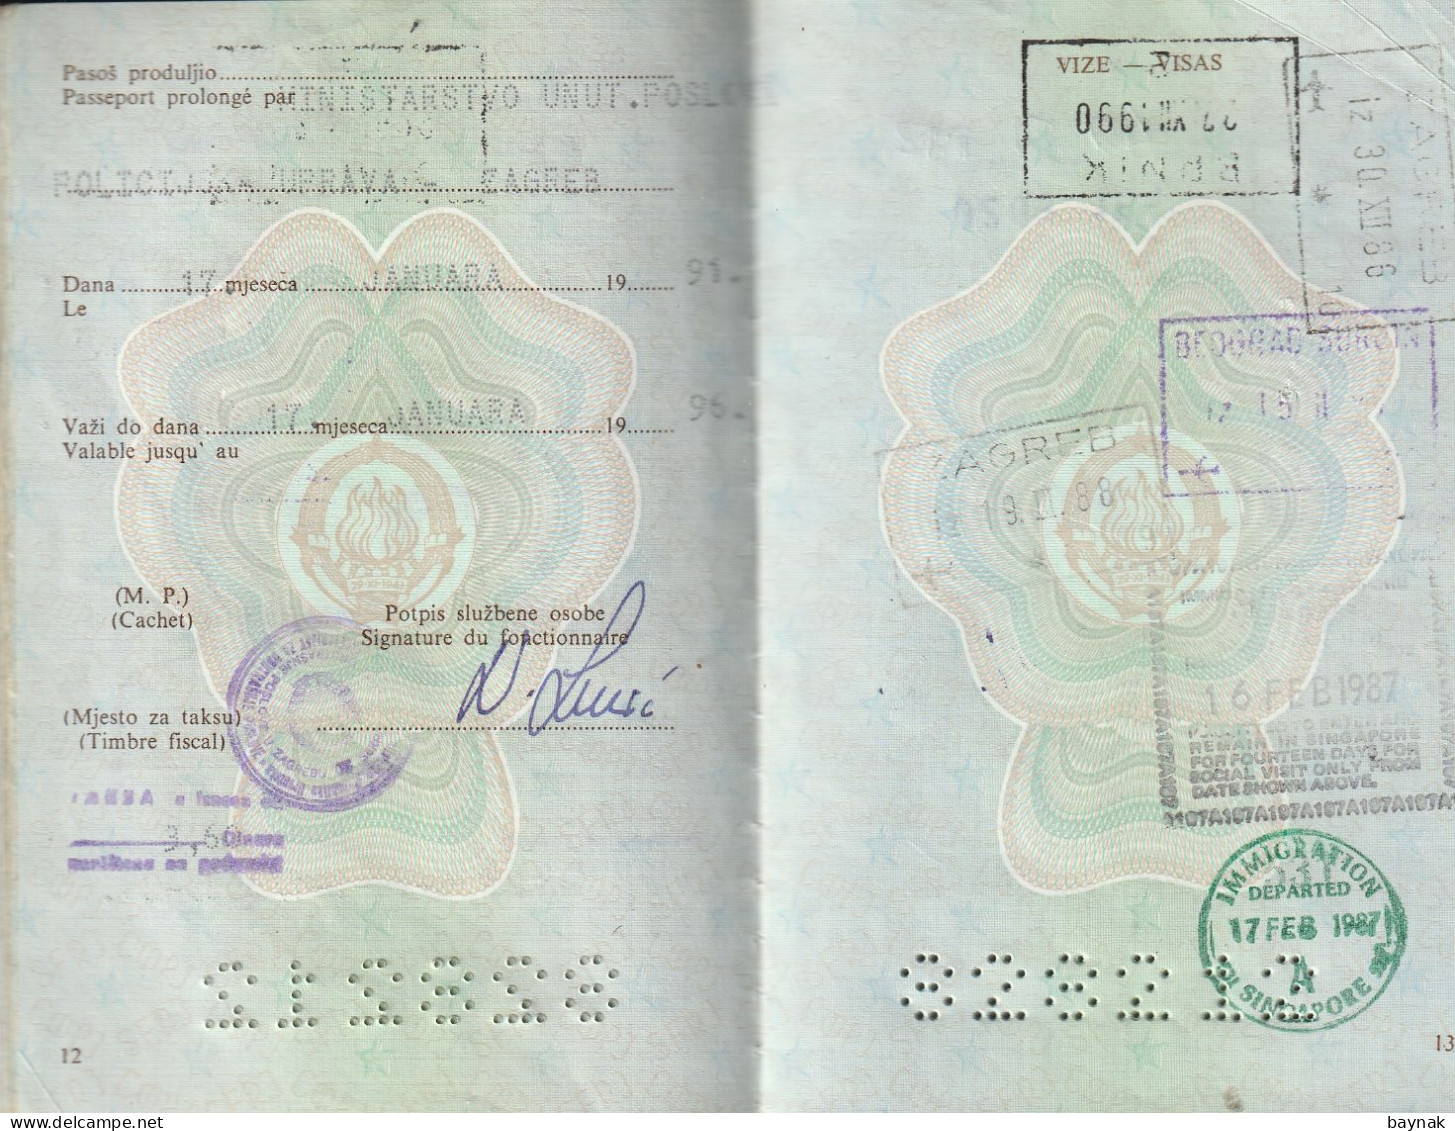 PM104 -   SFR YUGOSLAVIA   --  PASSPORT    -  MAN  - 1986  --  VISA:   MALAYSIA, SINGAPORE, THAILAND, ANTIGUA & BARBUDA - Documentos Históricos